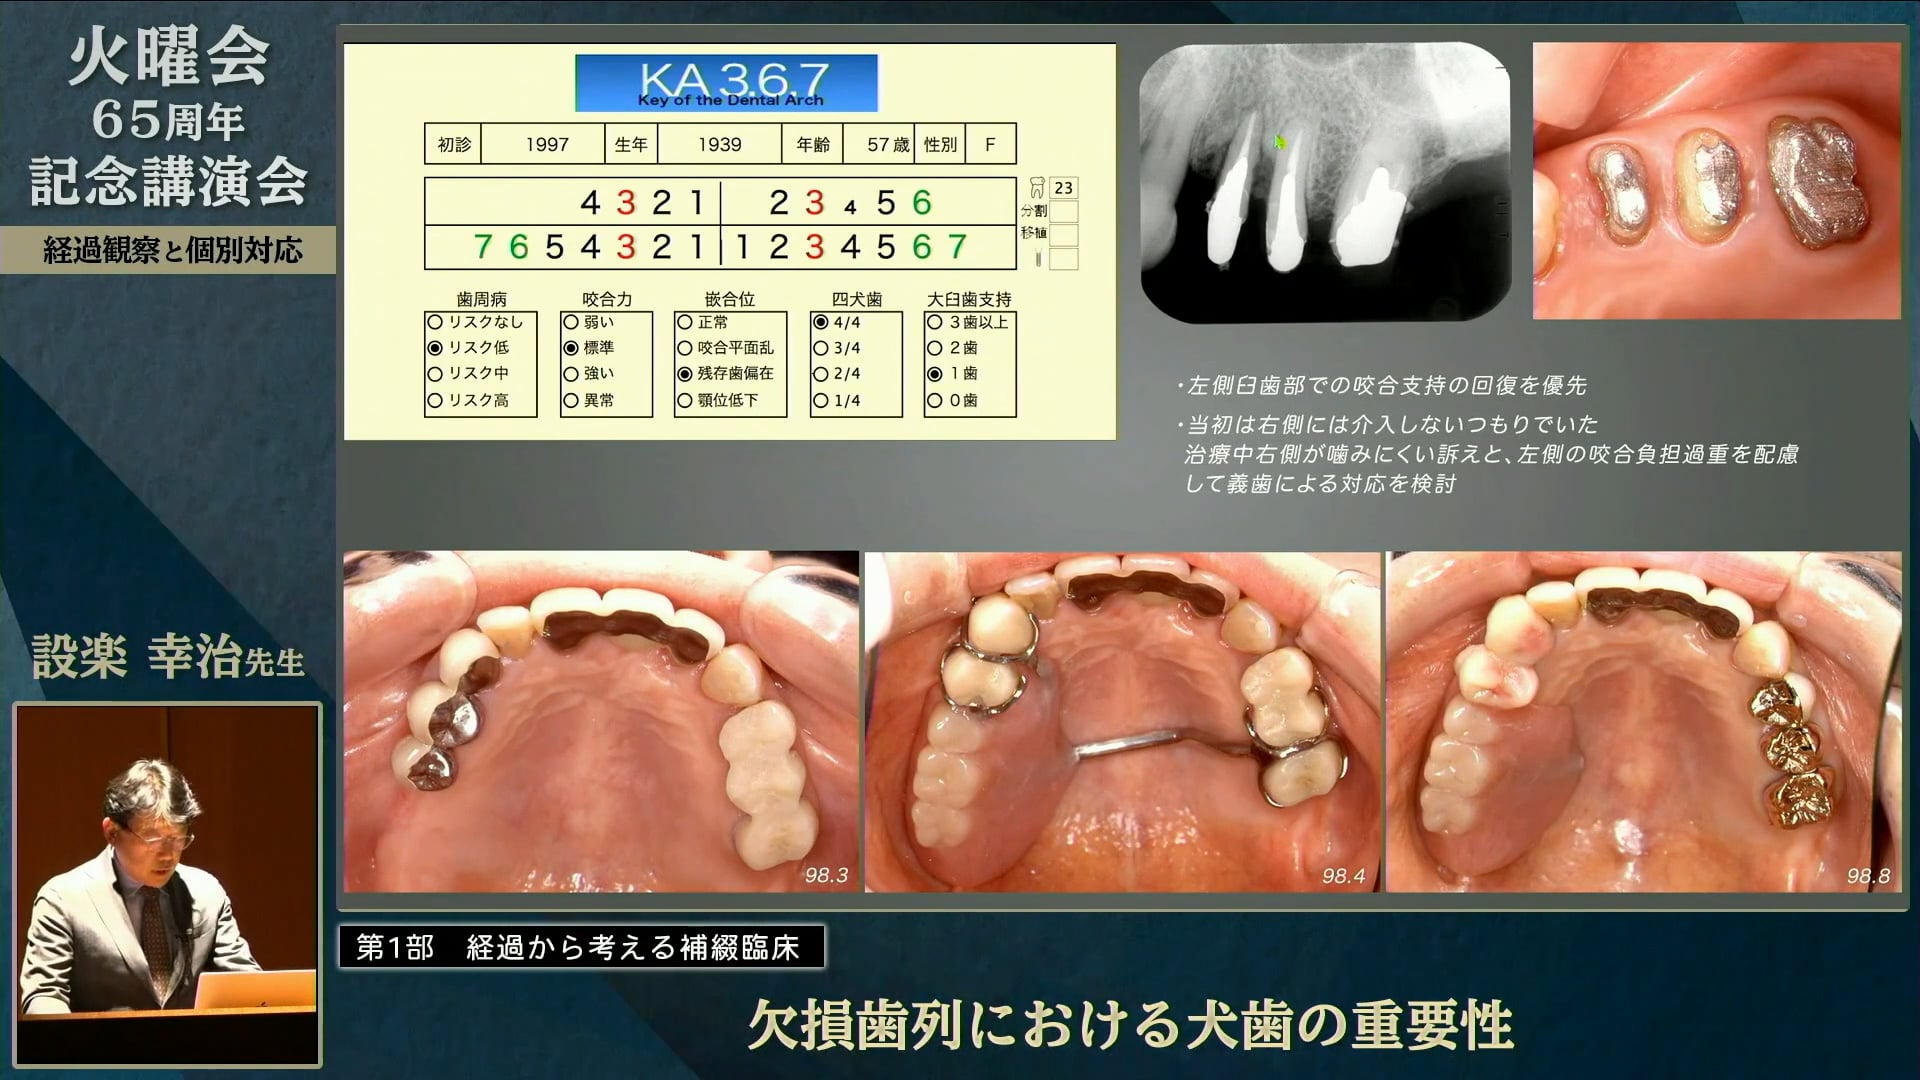 欠損歯列における犬歯の重要性│設楽 幸治先生